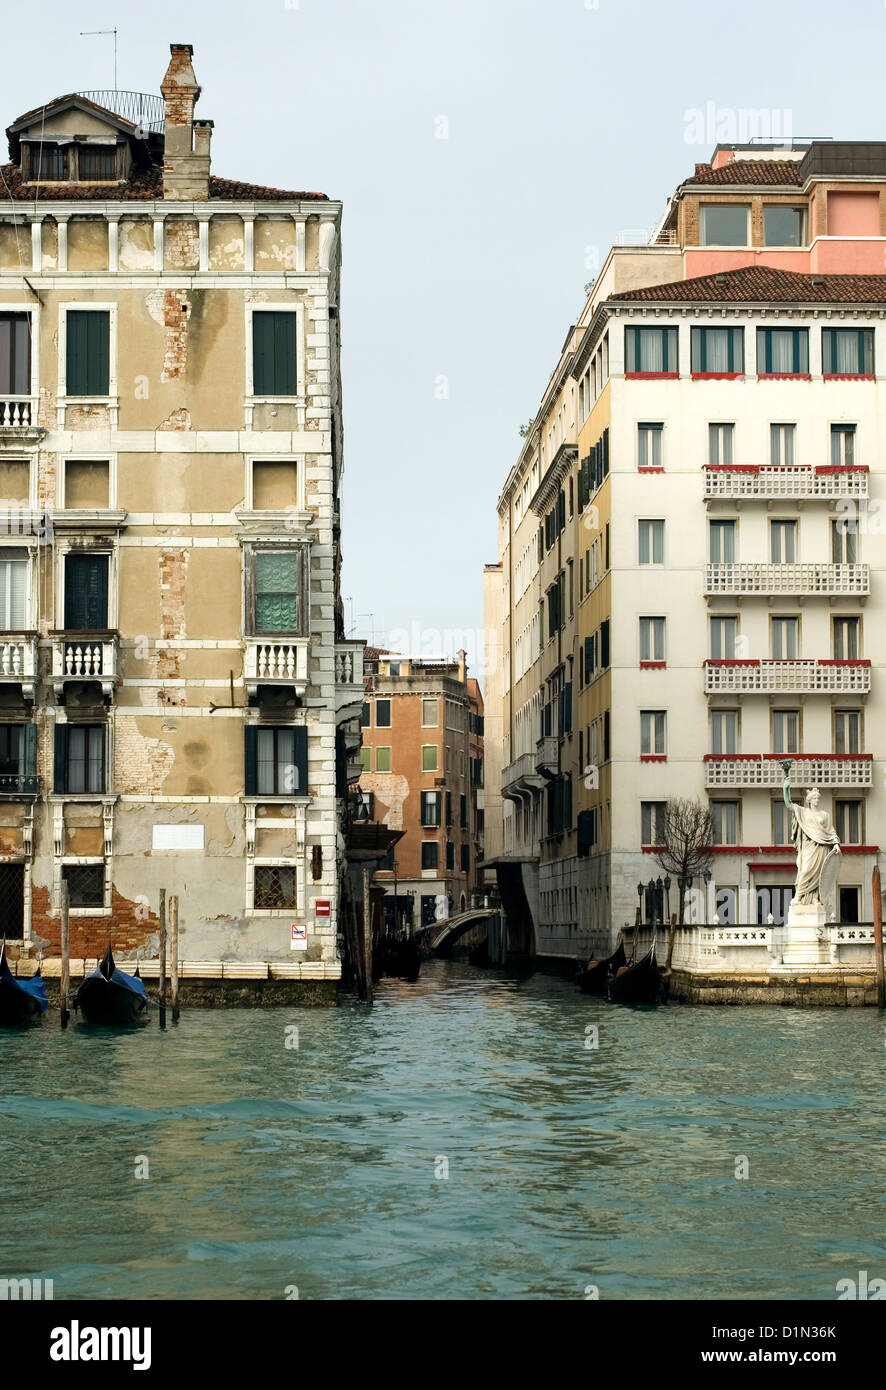 Des bâtiments rustiques sur un canal, Venise, Italie Banque D'Images